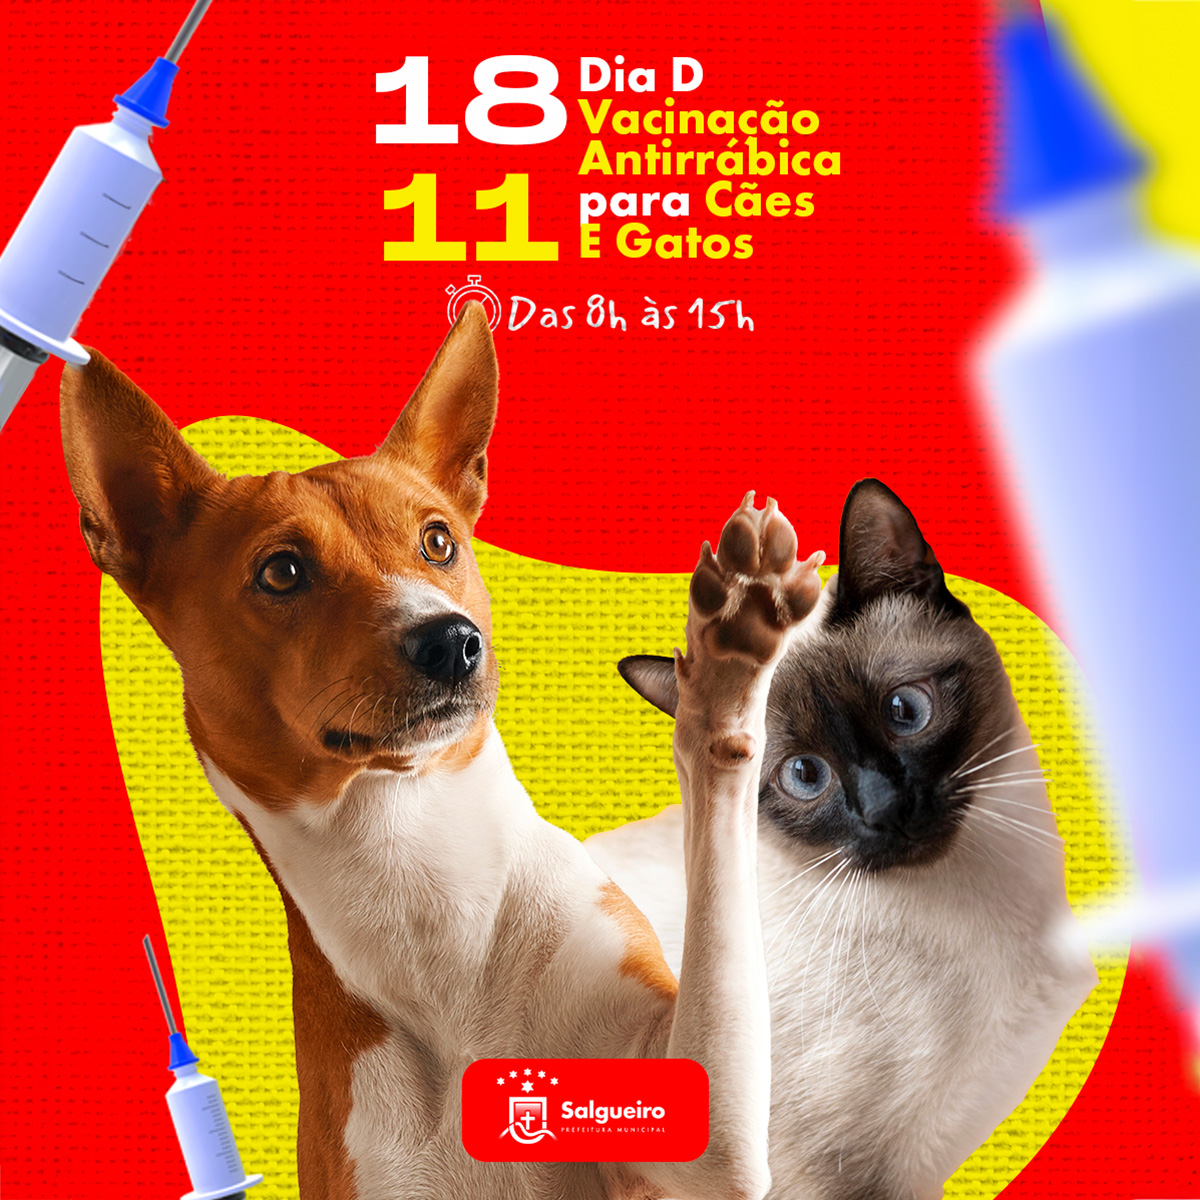 Prefeitura de Salgueiro promove Dia D de Vacinação Antirrábica para Cães e Gatos neste sábado (18).